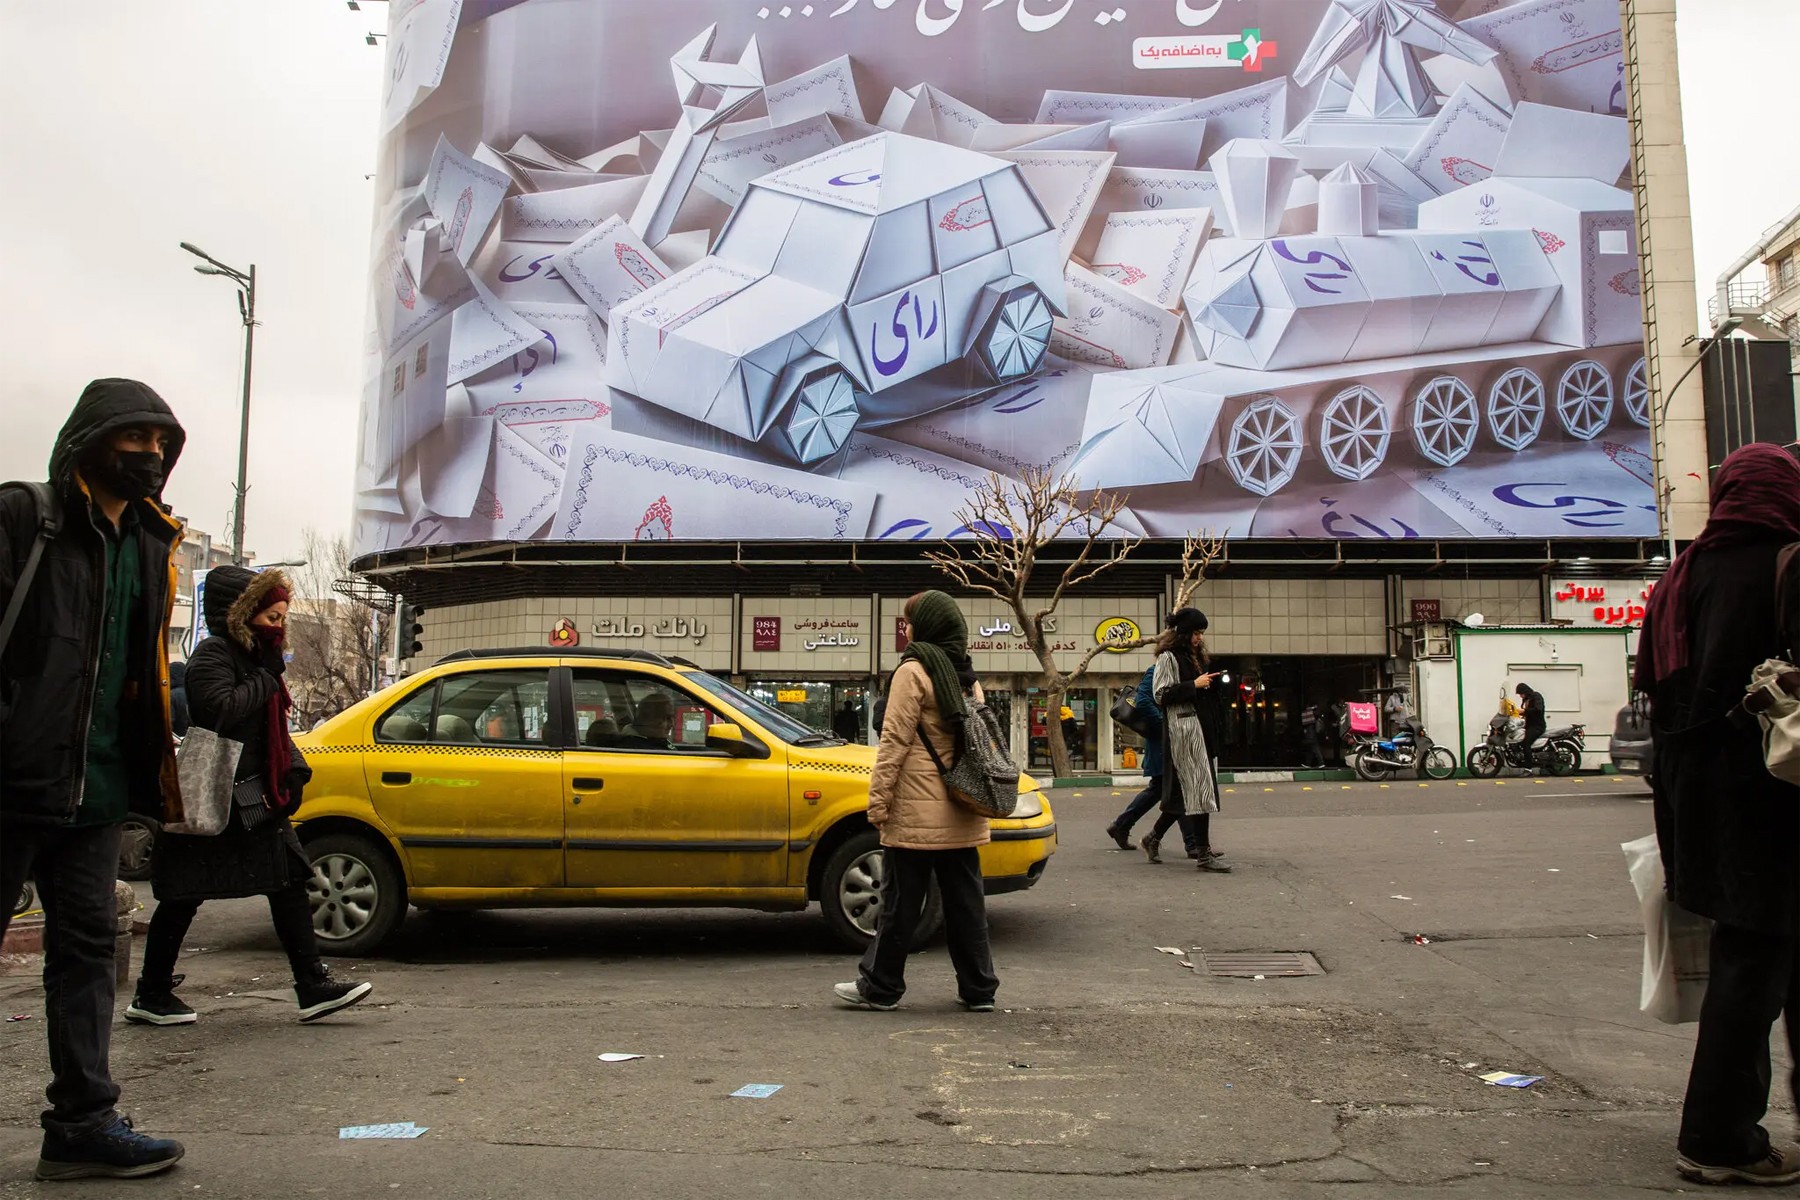 نیویورک تایمز: در انتخابات جمهوری اسلامی، ایرانیان خشم خود را بر سران حاکم تخلیه کردند